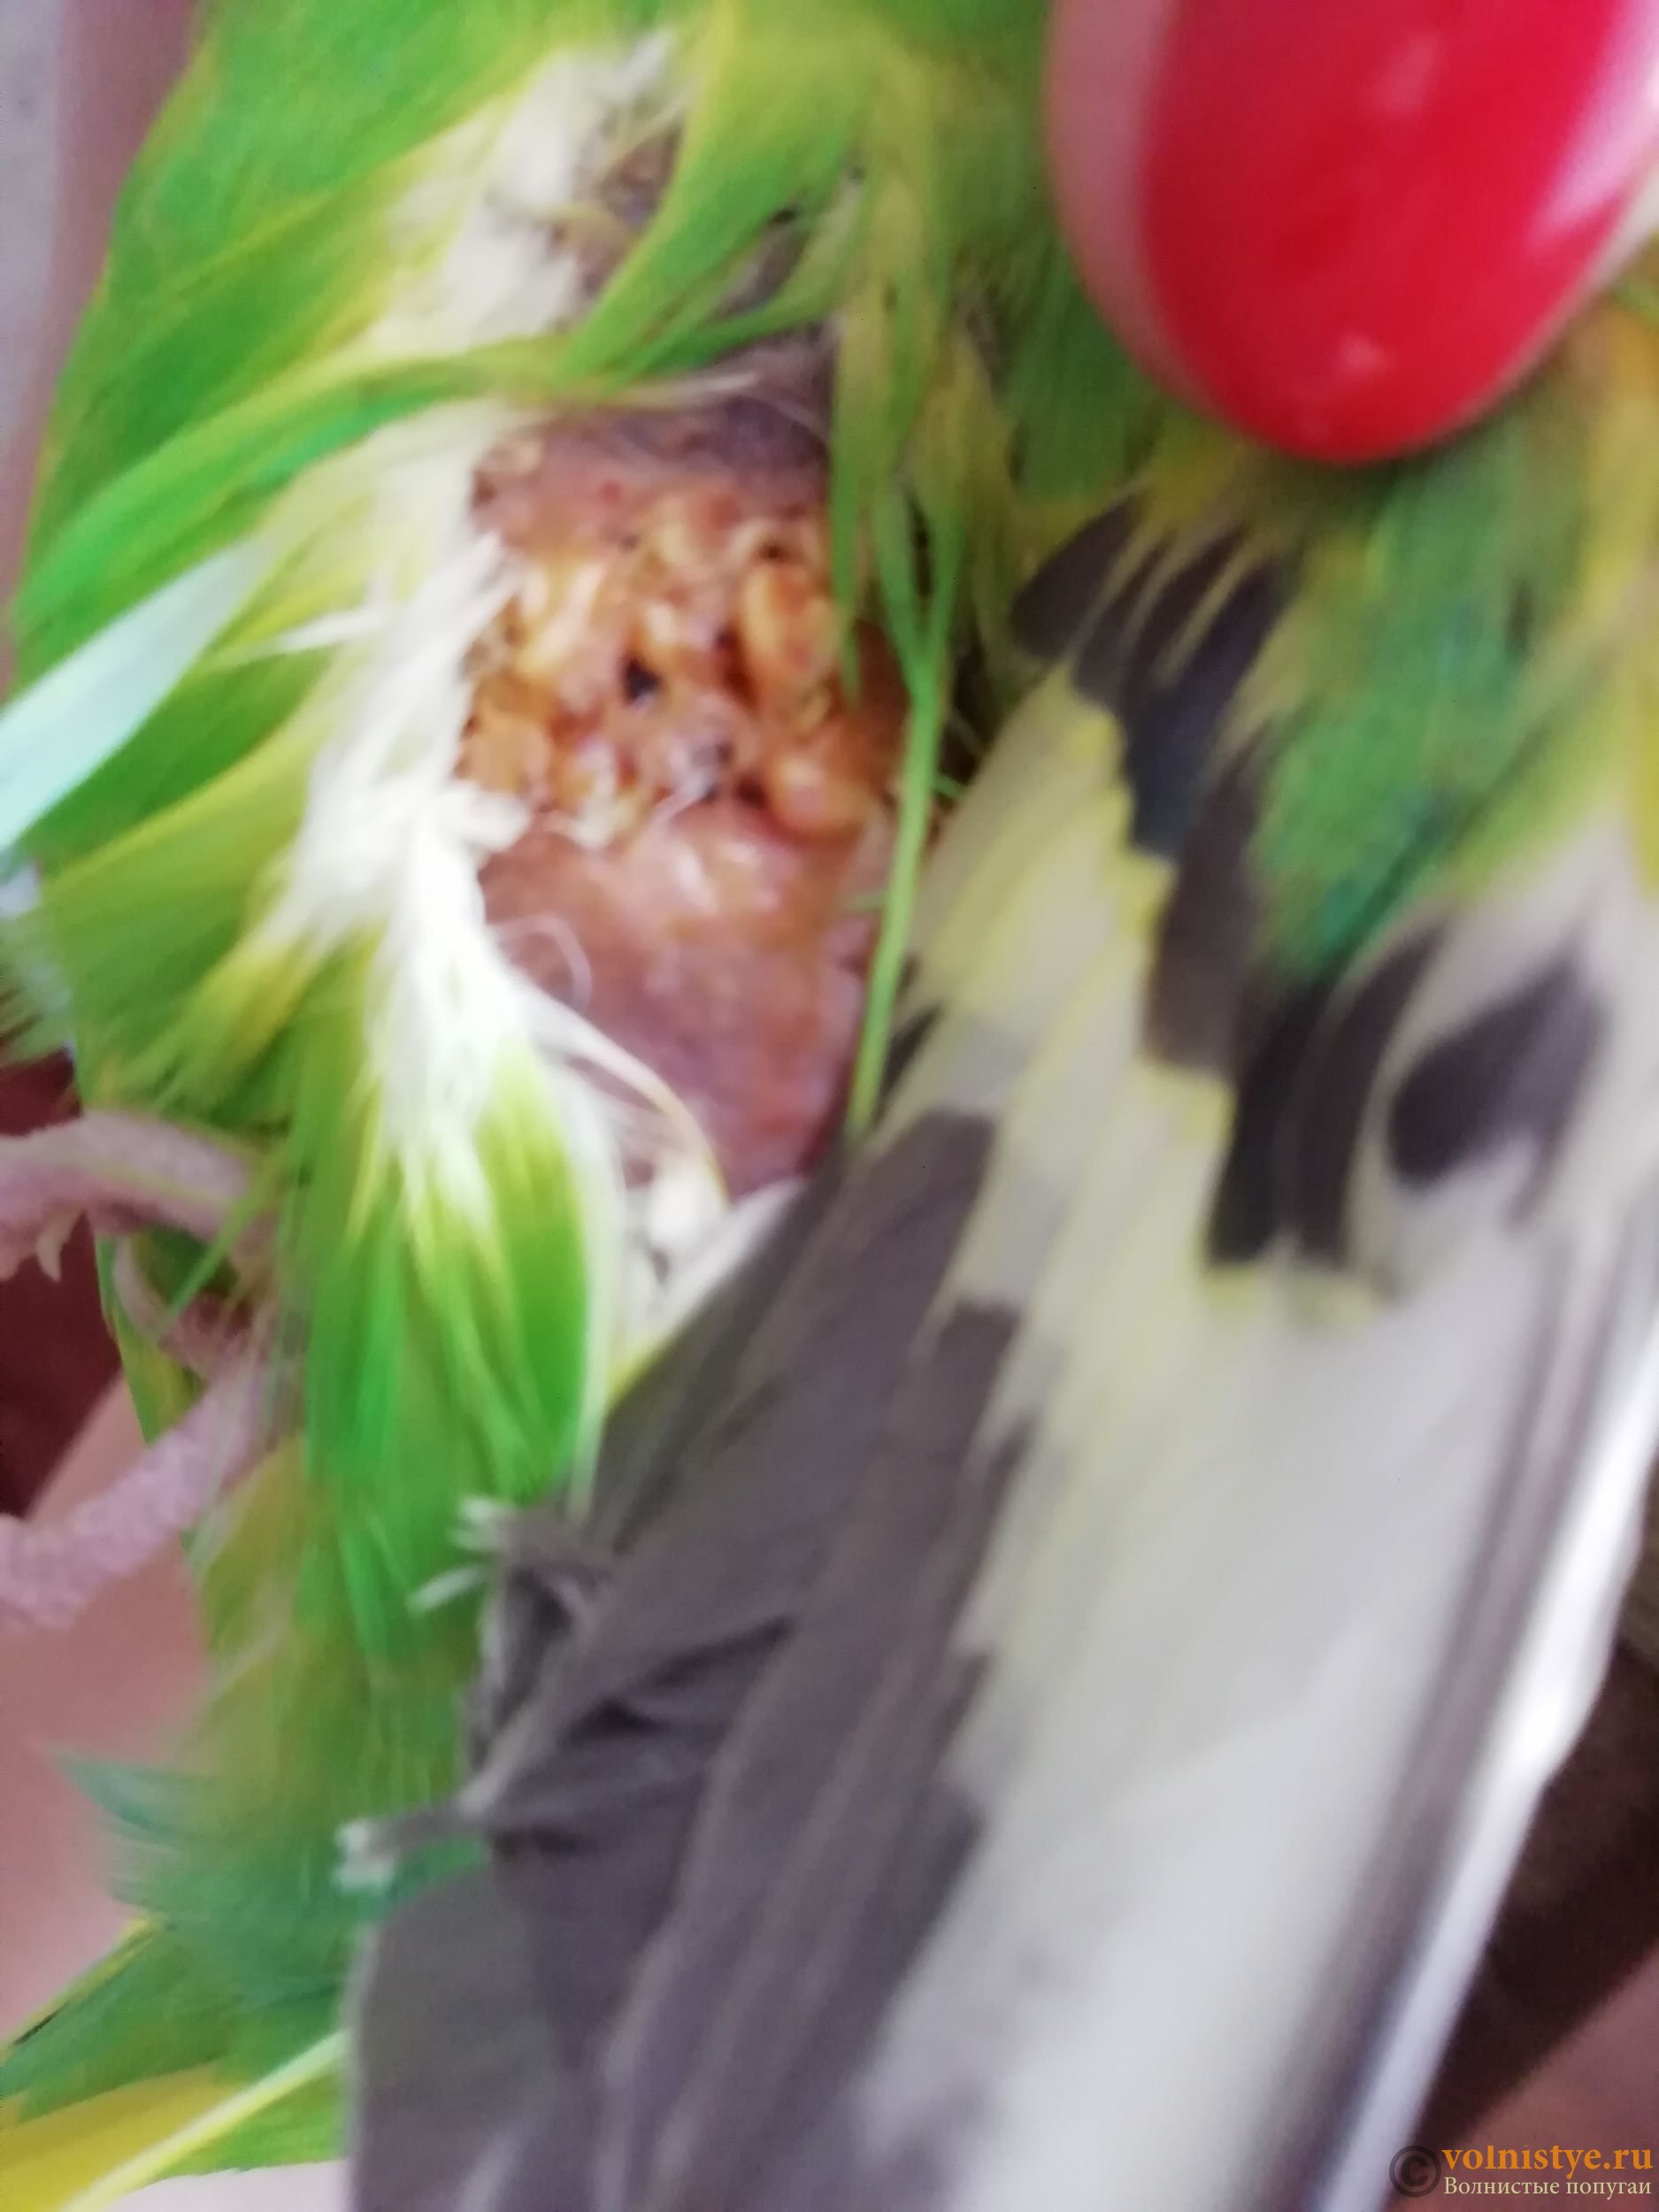 Болезни волнистых попугайчиков симптомы и лечение